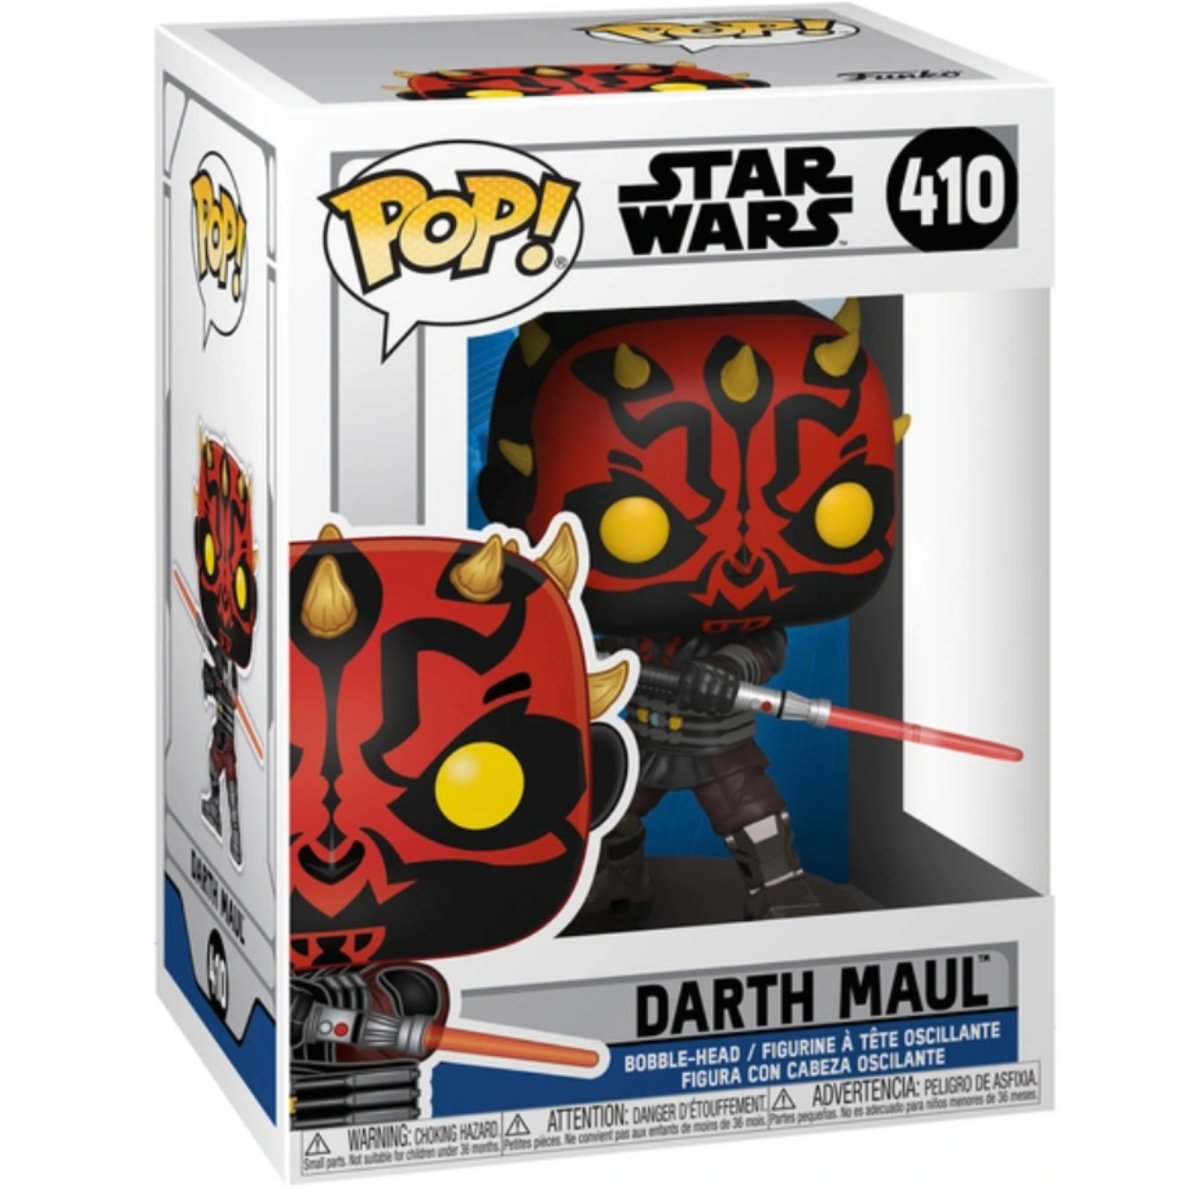 Star Wars - Darth Maul #410 - Funko Pop! Vinyl Star Wars - Persona Toys